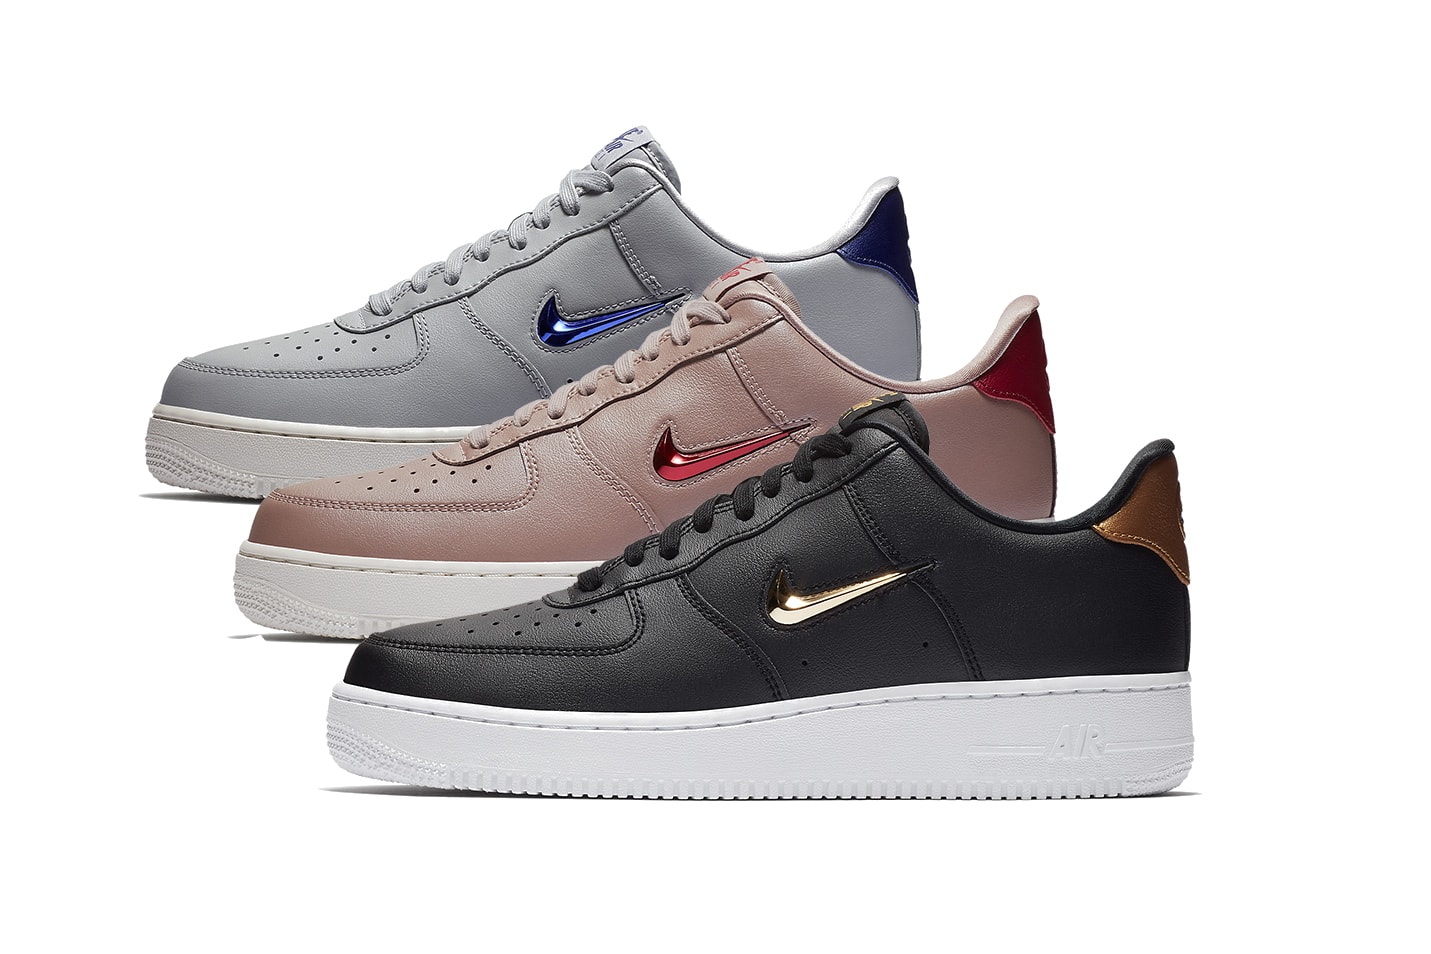 Dictatuur Op en neer gaan Edele Nike Reveals New Air Force 1 Low Jewel Sneakers | Hypebae